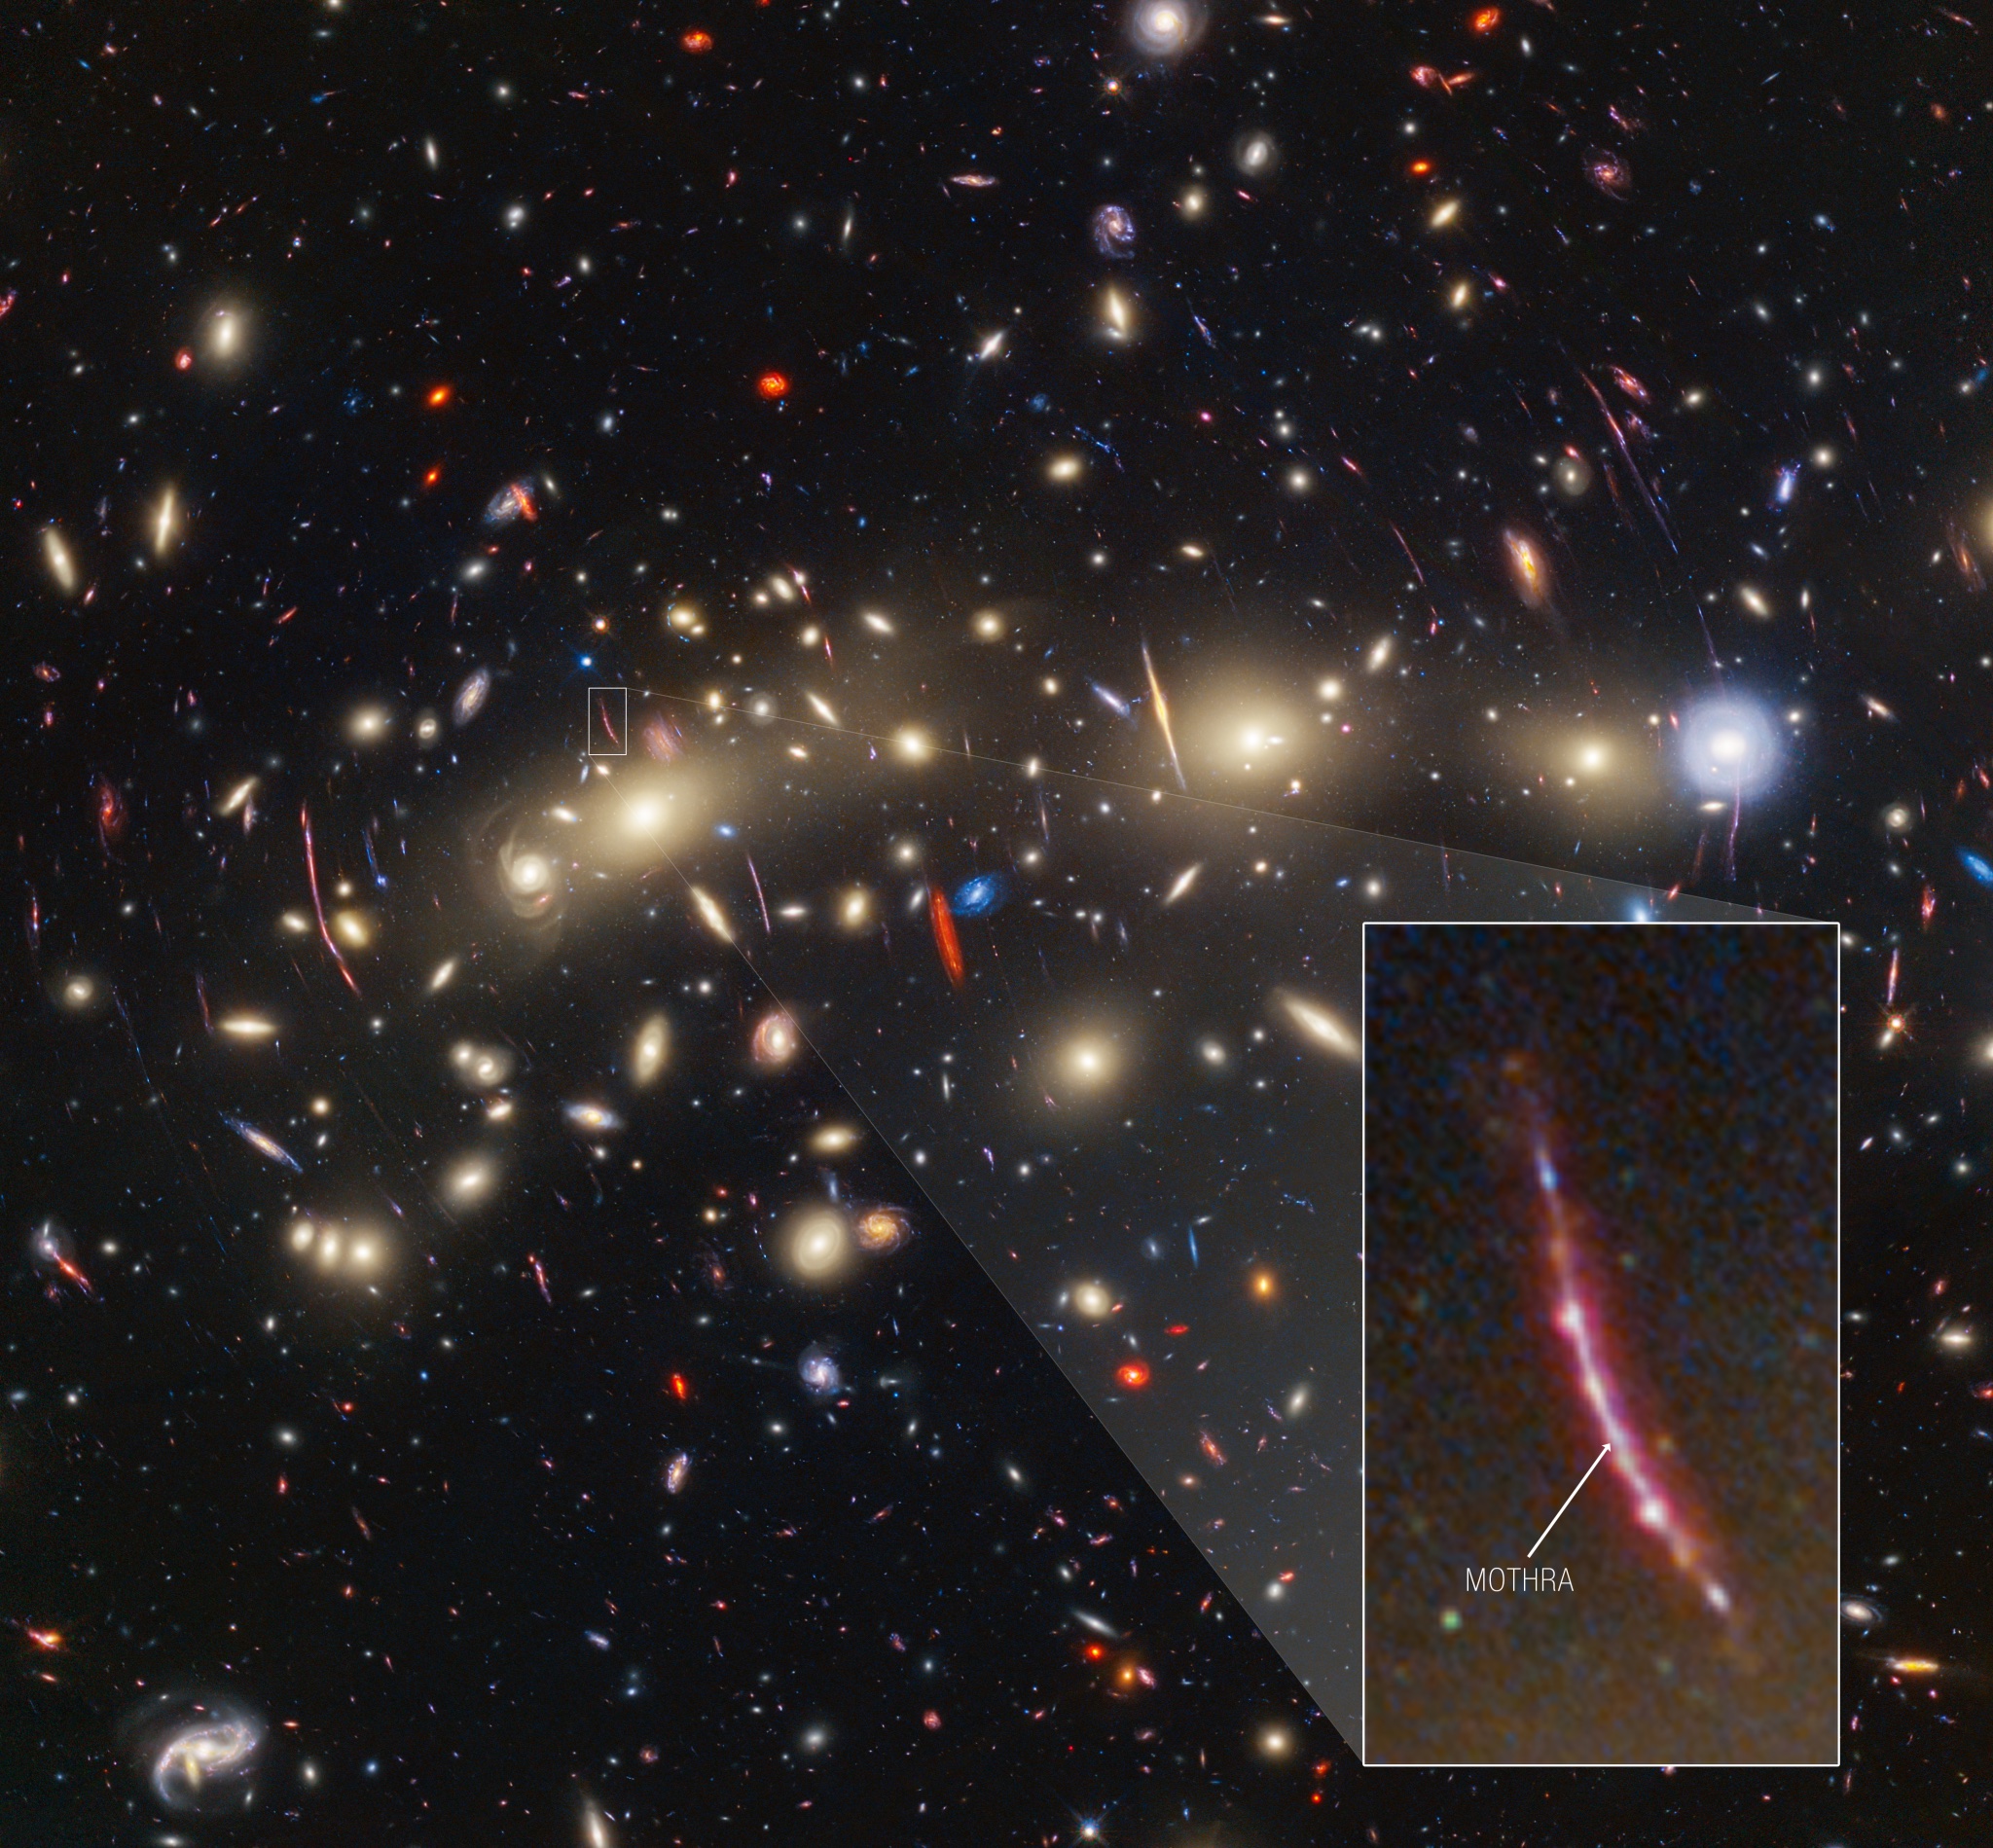 Le télescope James Webb révèle l’étoile gargantuesque « Mothra » dans l’image la plus colorée de l’univers jamais prise